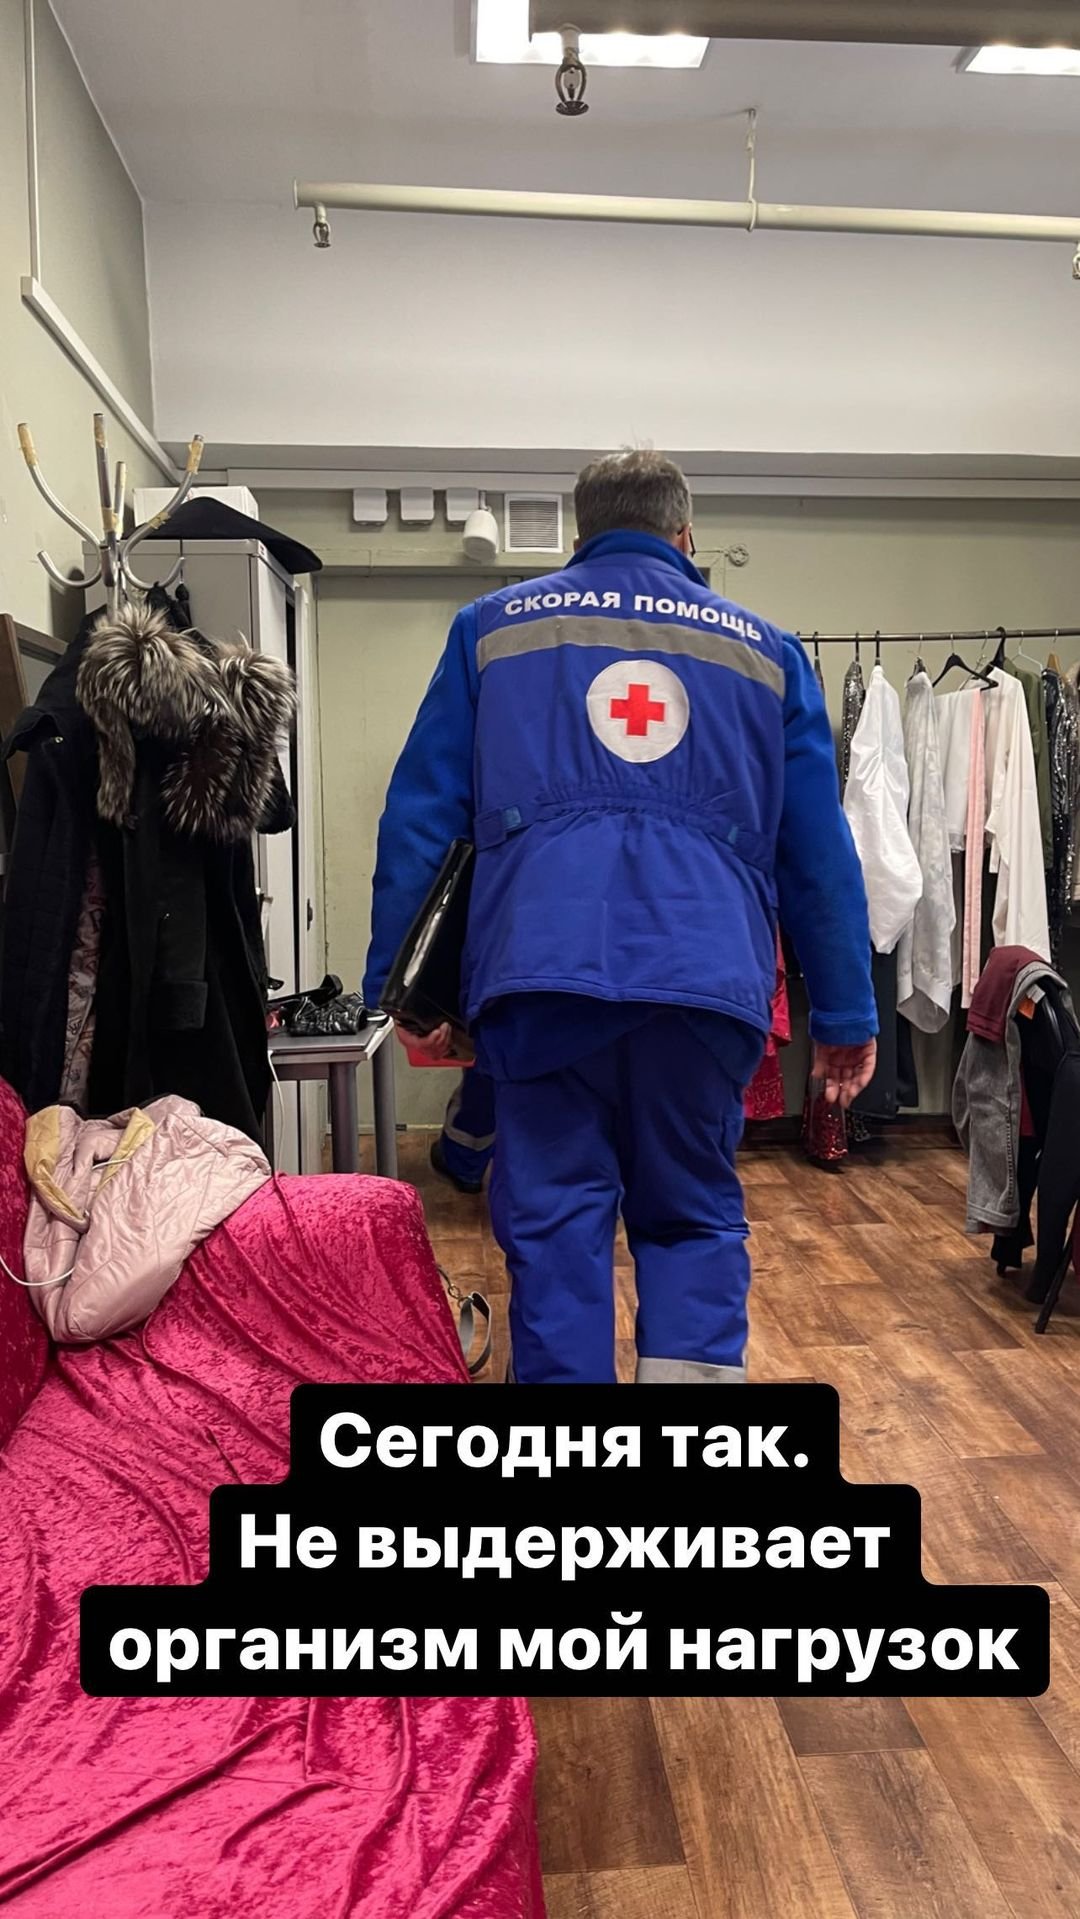 Анастасии Макеевой потребовалась помощь медиков после выступления